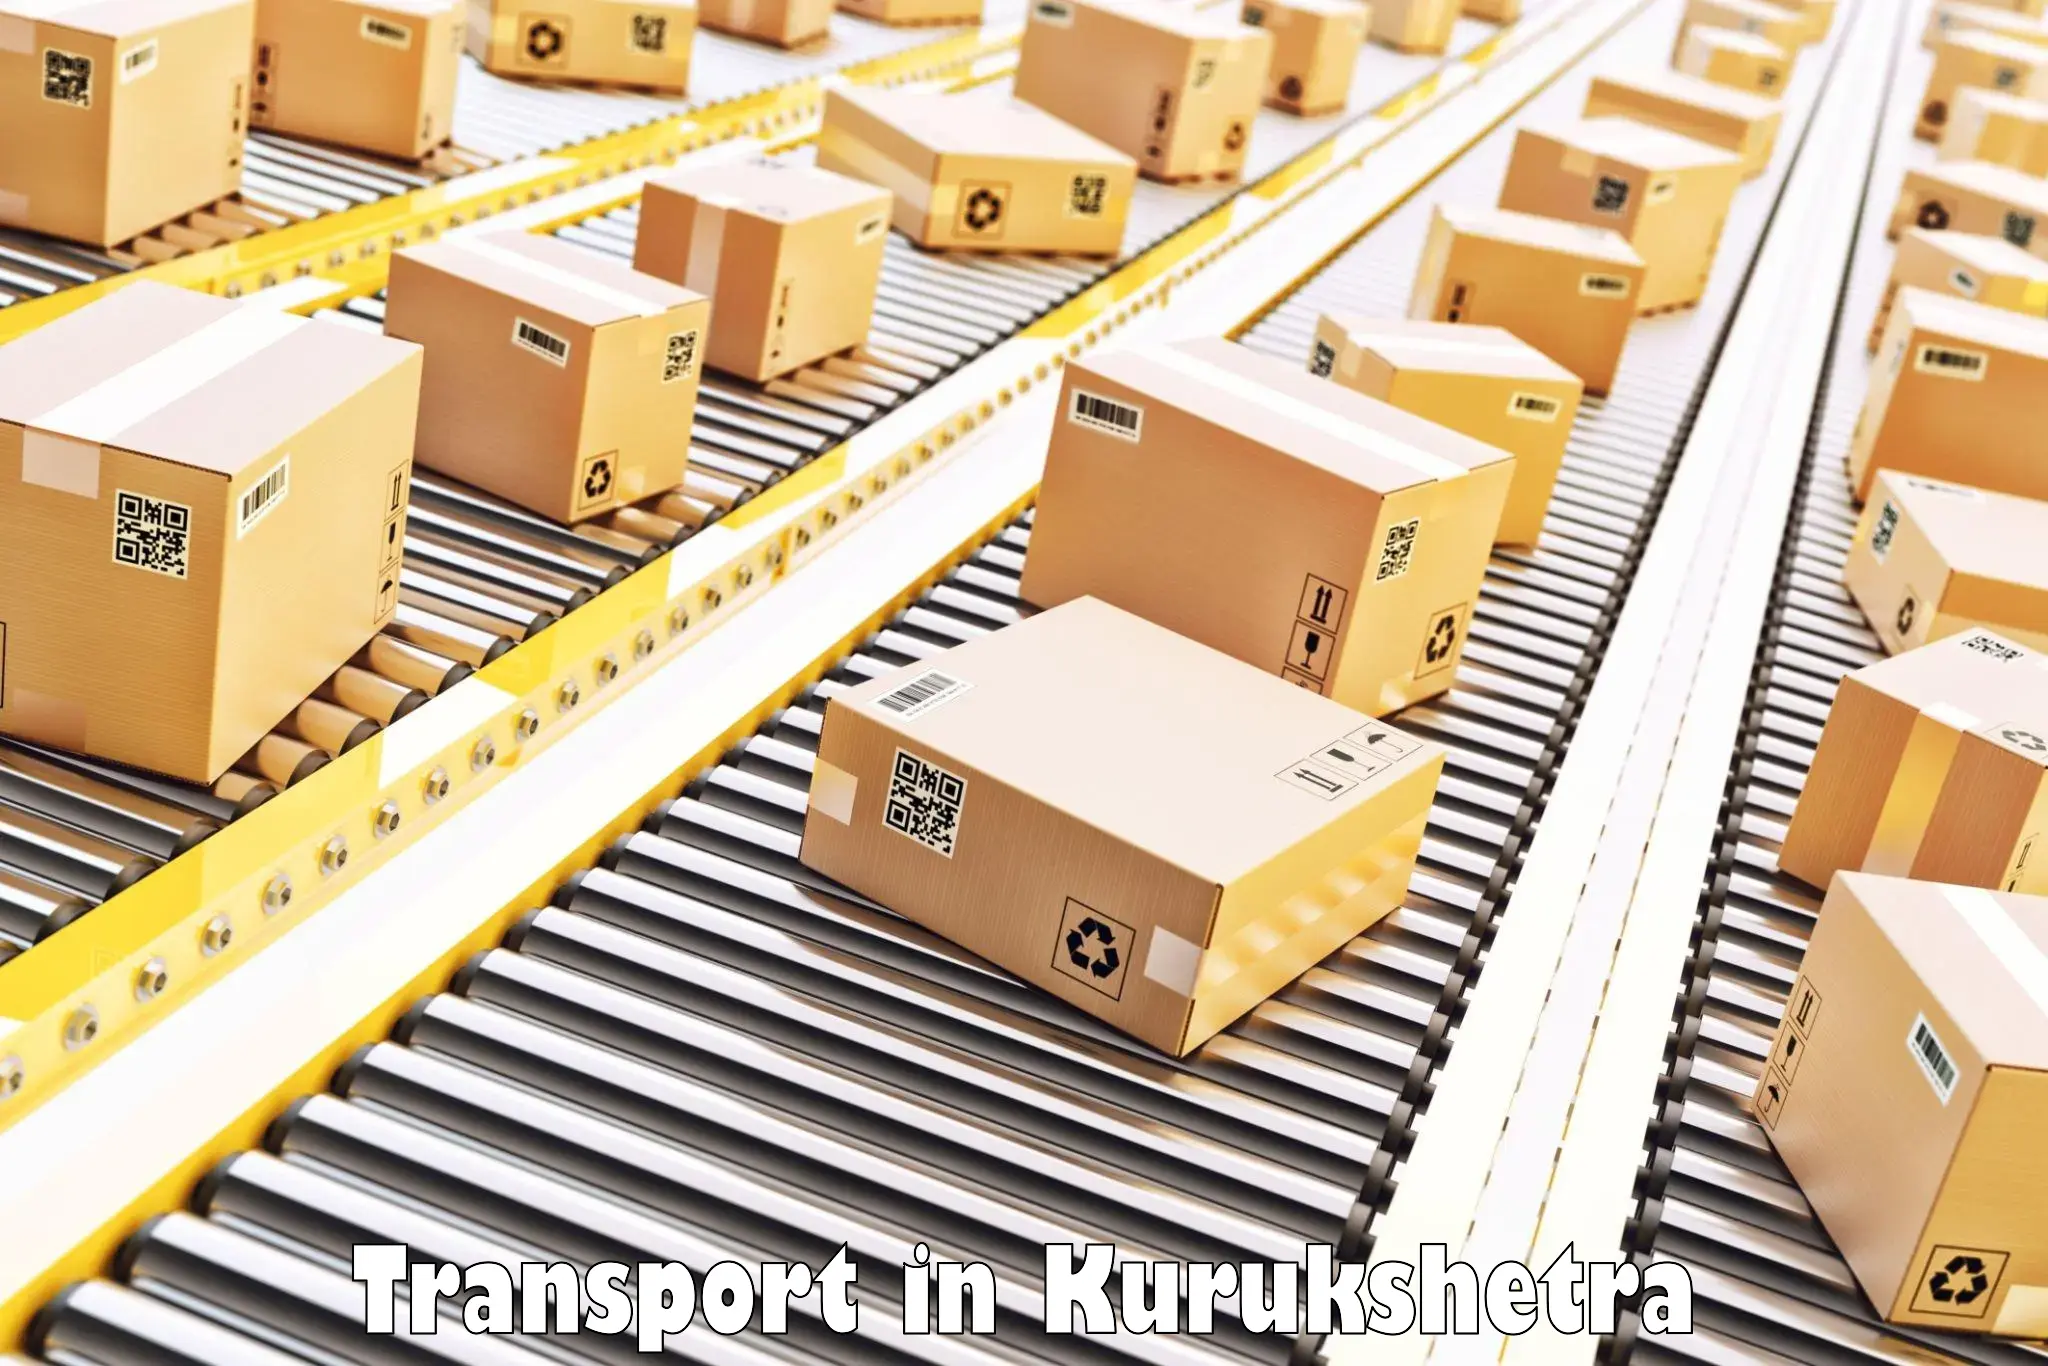 Road transport online services in Kurukshetra